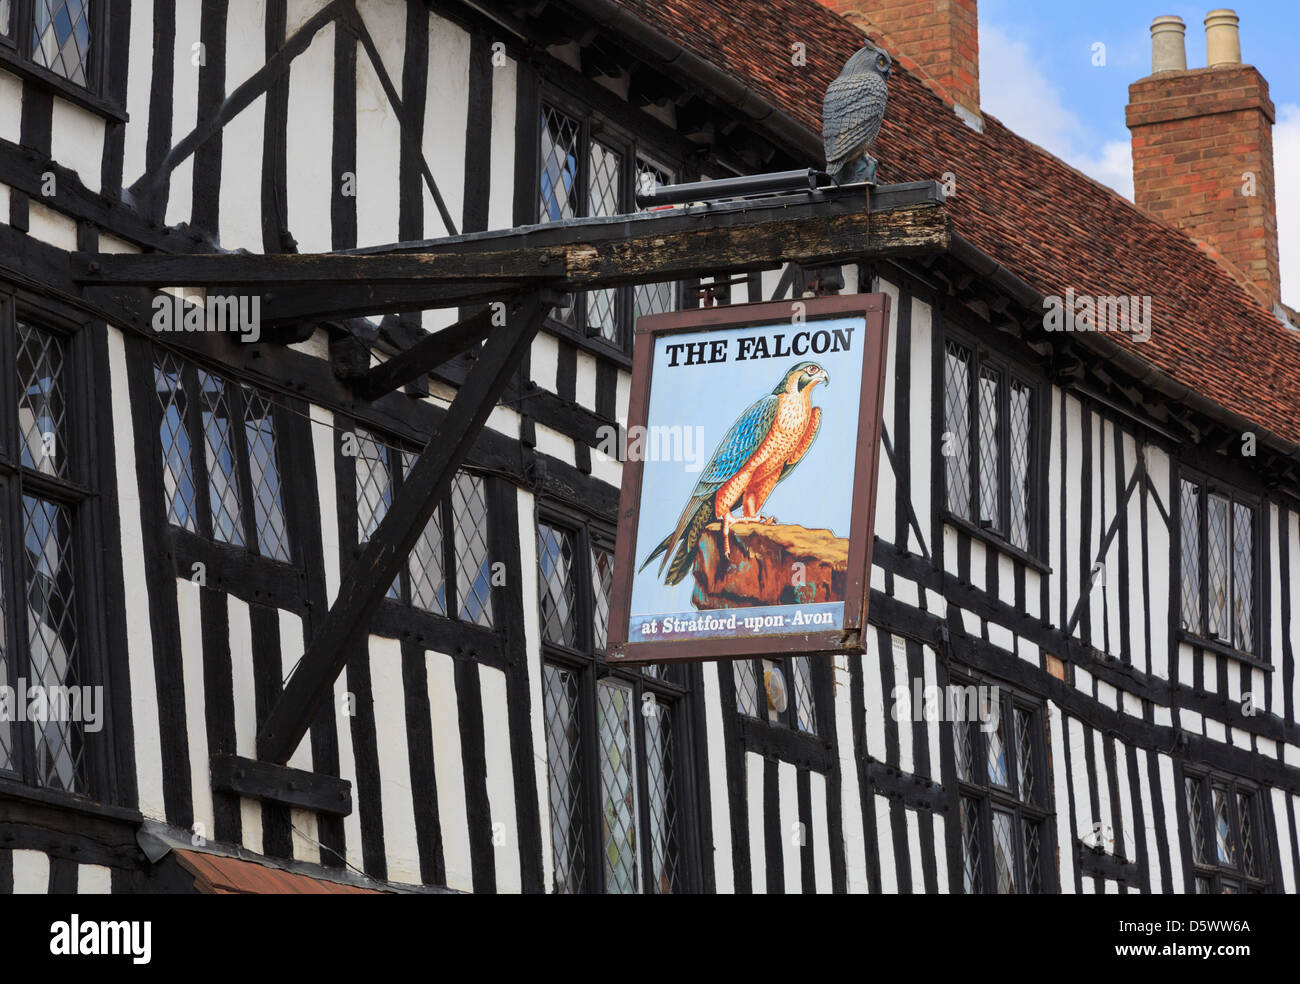 Pub segno per il Legacy Falcon Hotel del XVI secolo in bianco e nero e bianco edificio con travi di legno a Stratford-upon-Avon Warwickshire England Regno Unito Gran Bretagna Foto Stock